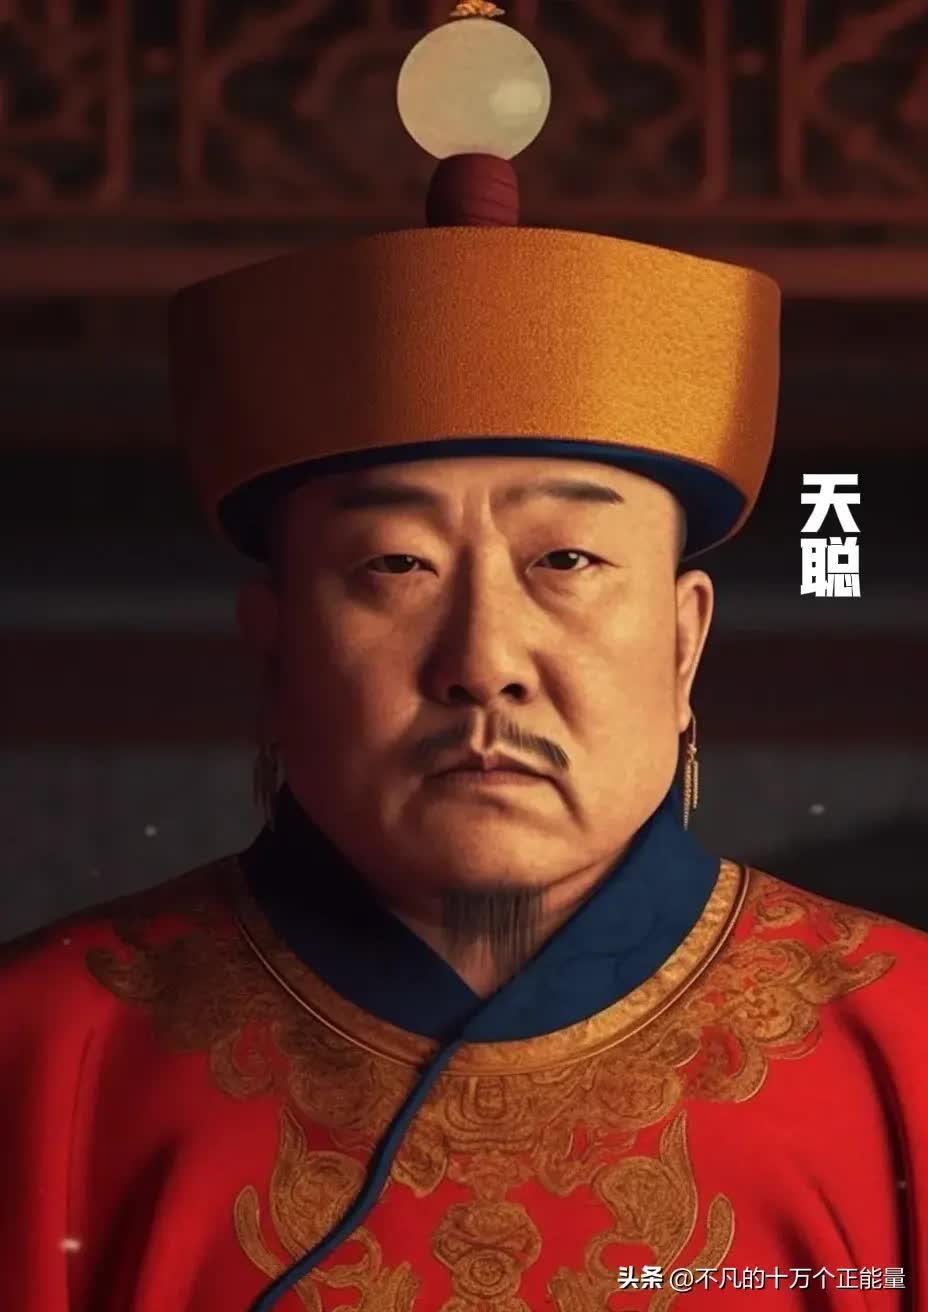 AI thêm màu vào chân dung 12 vị Hoàng đế nhà Thanh: Bất ngờ nhan sắc "đấng lang quân" của Từ Hi Thái hậu- Ảnh 4.